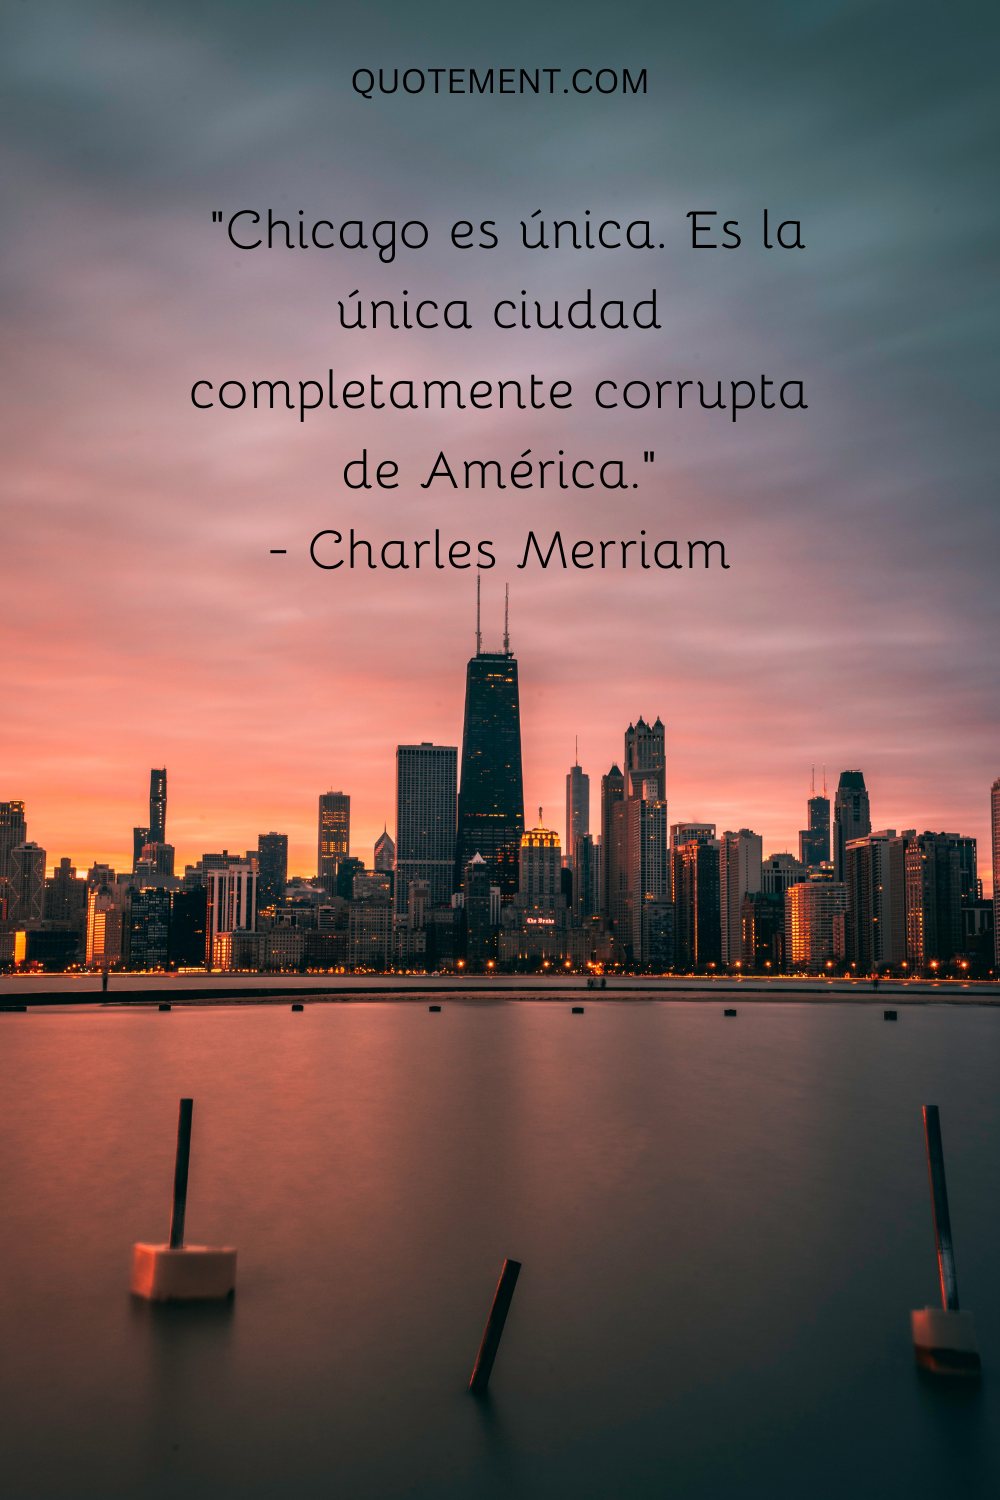 "Chicago es única. Es la única ciudad completamente corrupta de América". - Charles Merriam